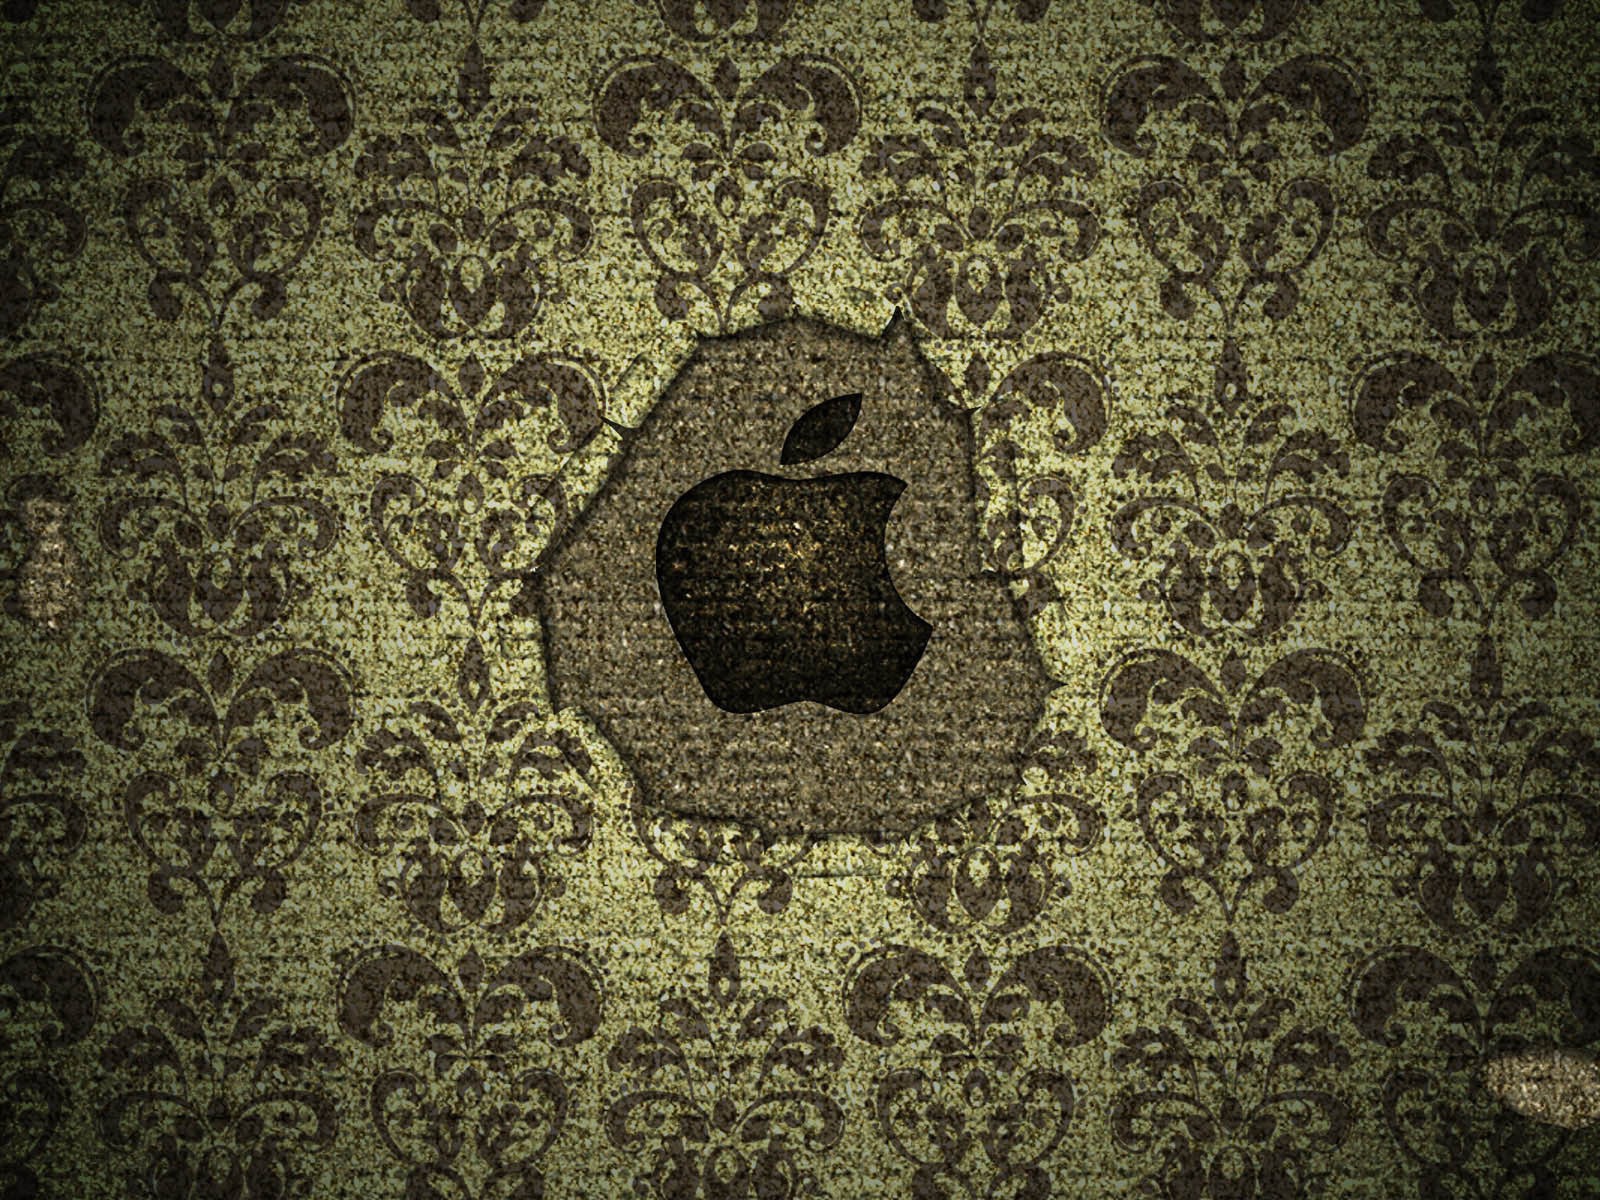 Символ Apple на ковре